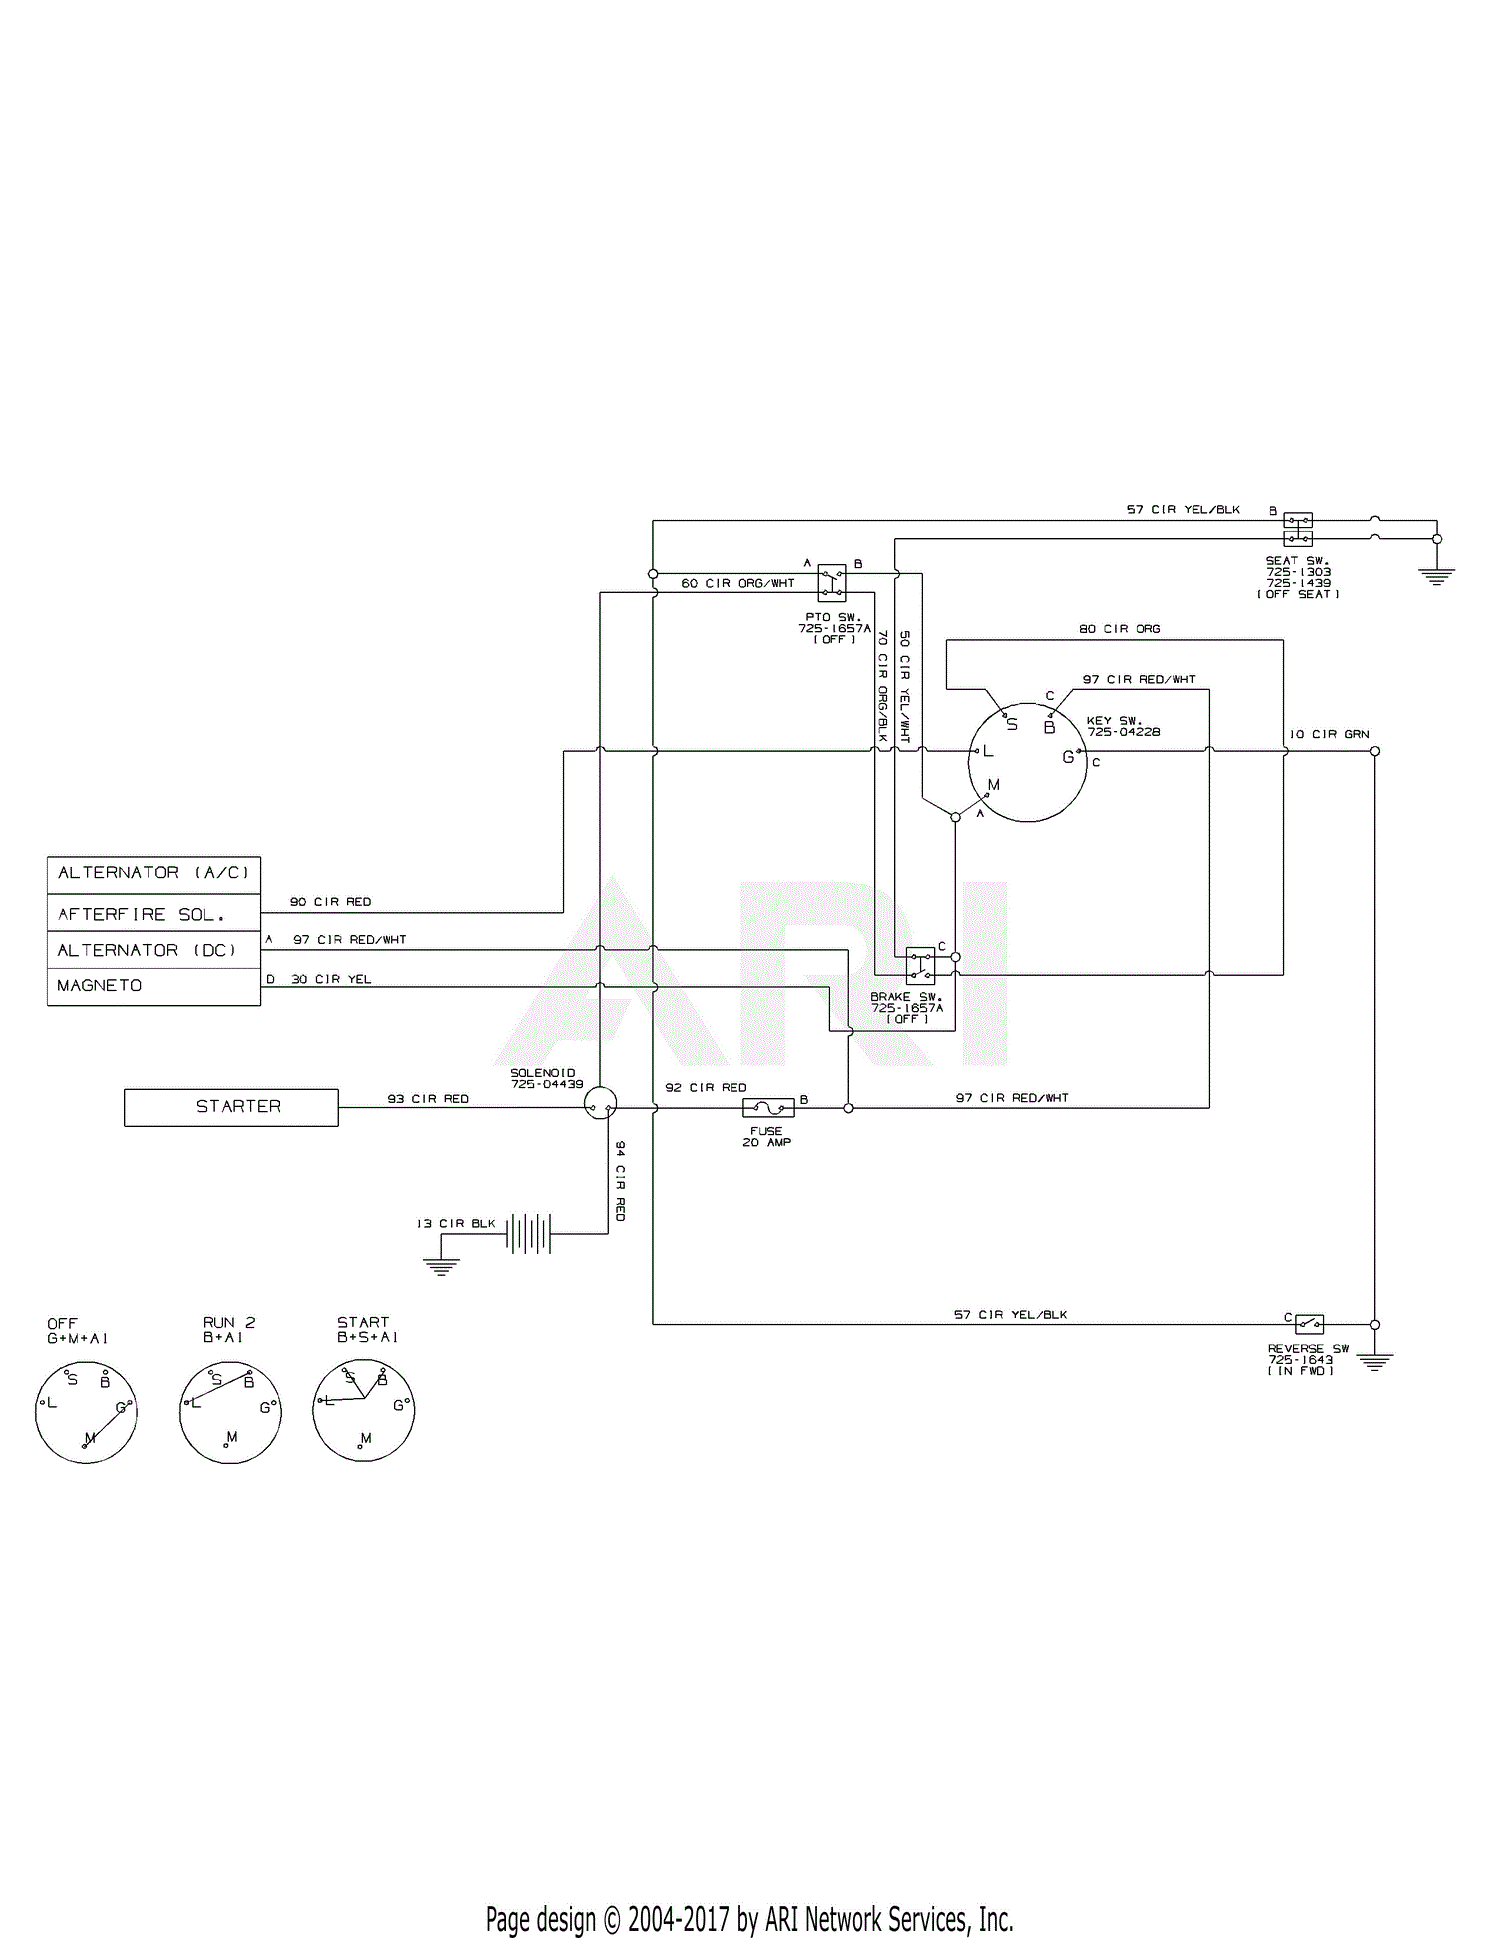 Samsung Wa80u3 Wiring Diagram Full Hd Version Wiring Diagram Kage Diagrambase Emballages Sous Vide Fr